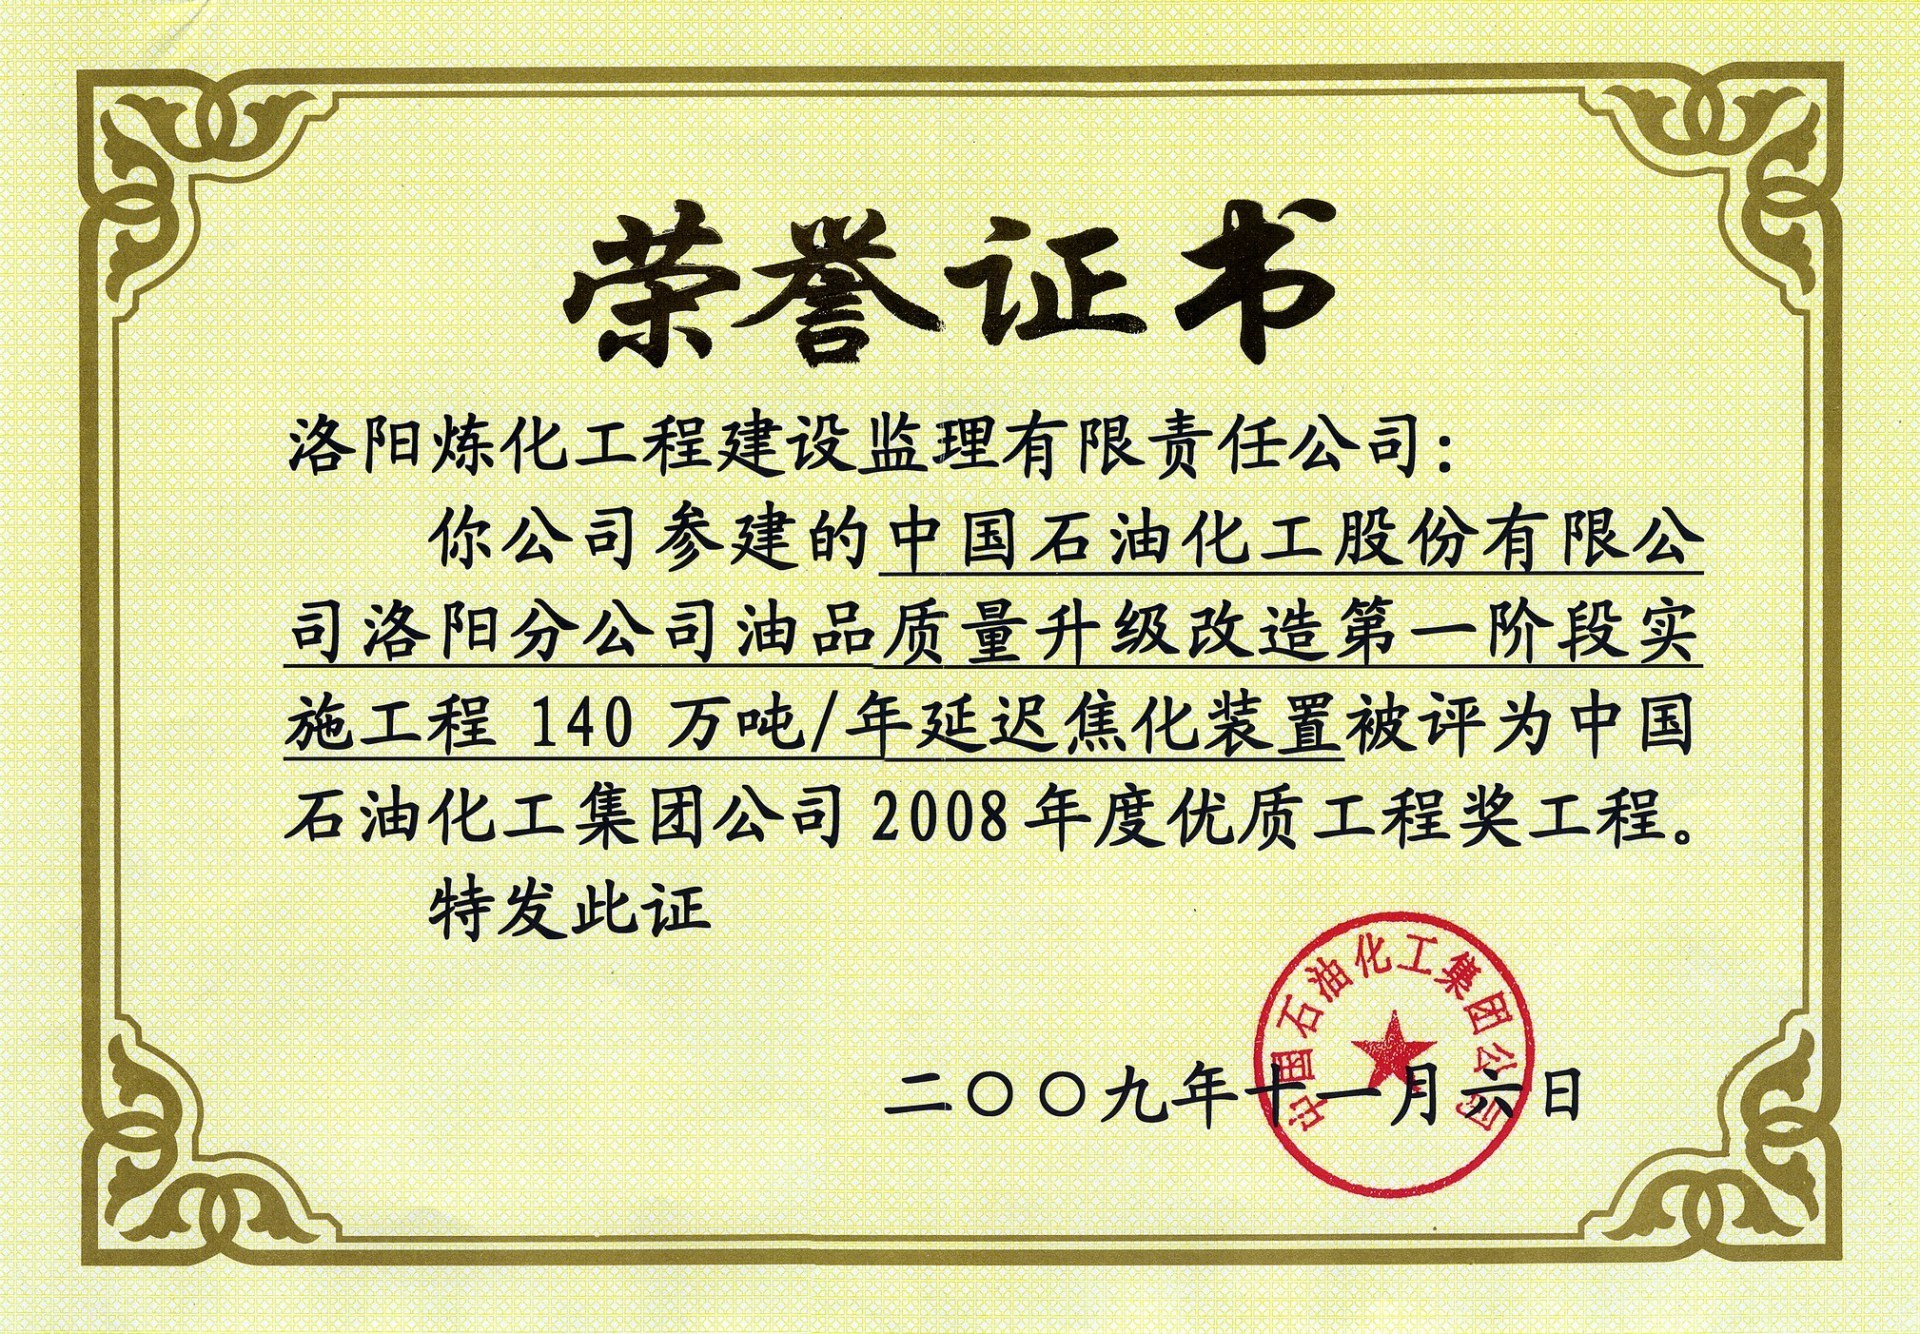 2008年度中国石化优质工程奖——洛阳石化油品质量升级